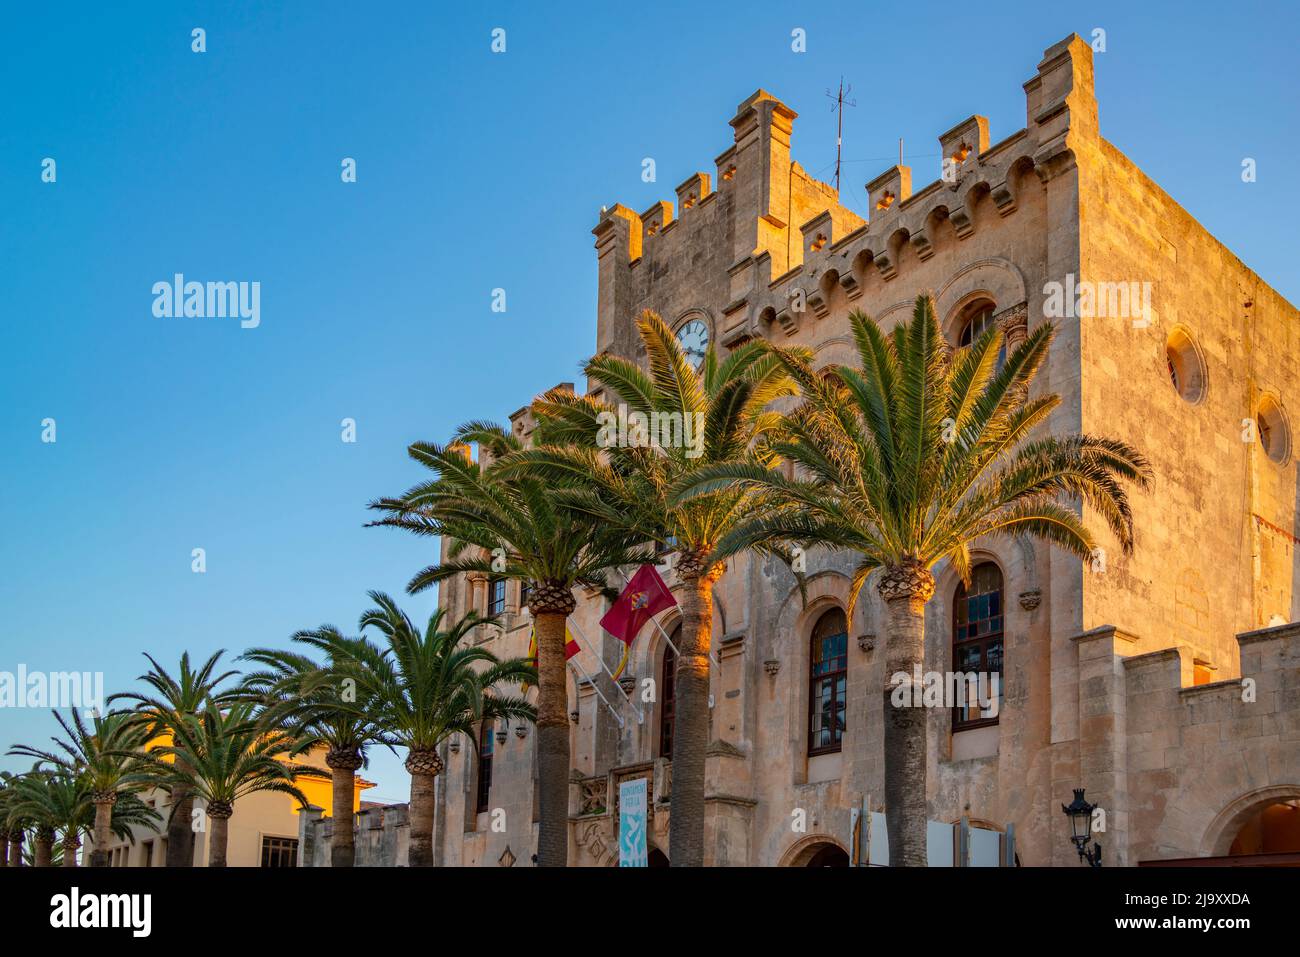 Vue de la mairie de Placa des Born au coucher du soleil, Ciutadella, Memorque, Iles Baléares, Espagne, Europe Banque D'Images